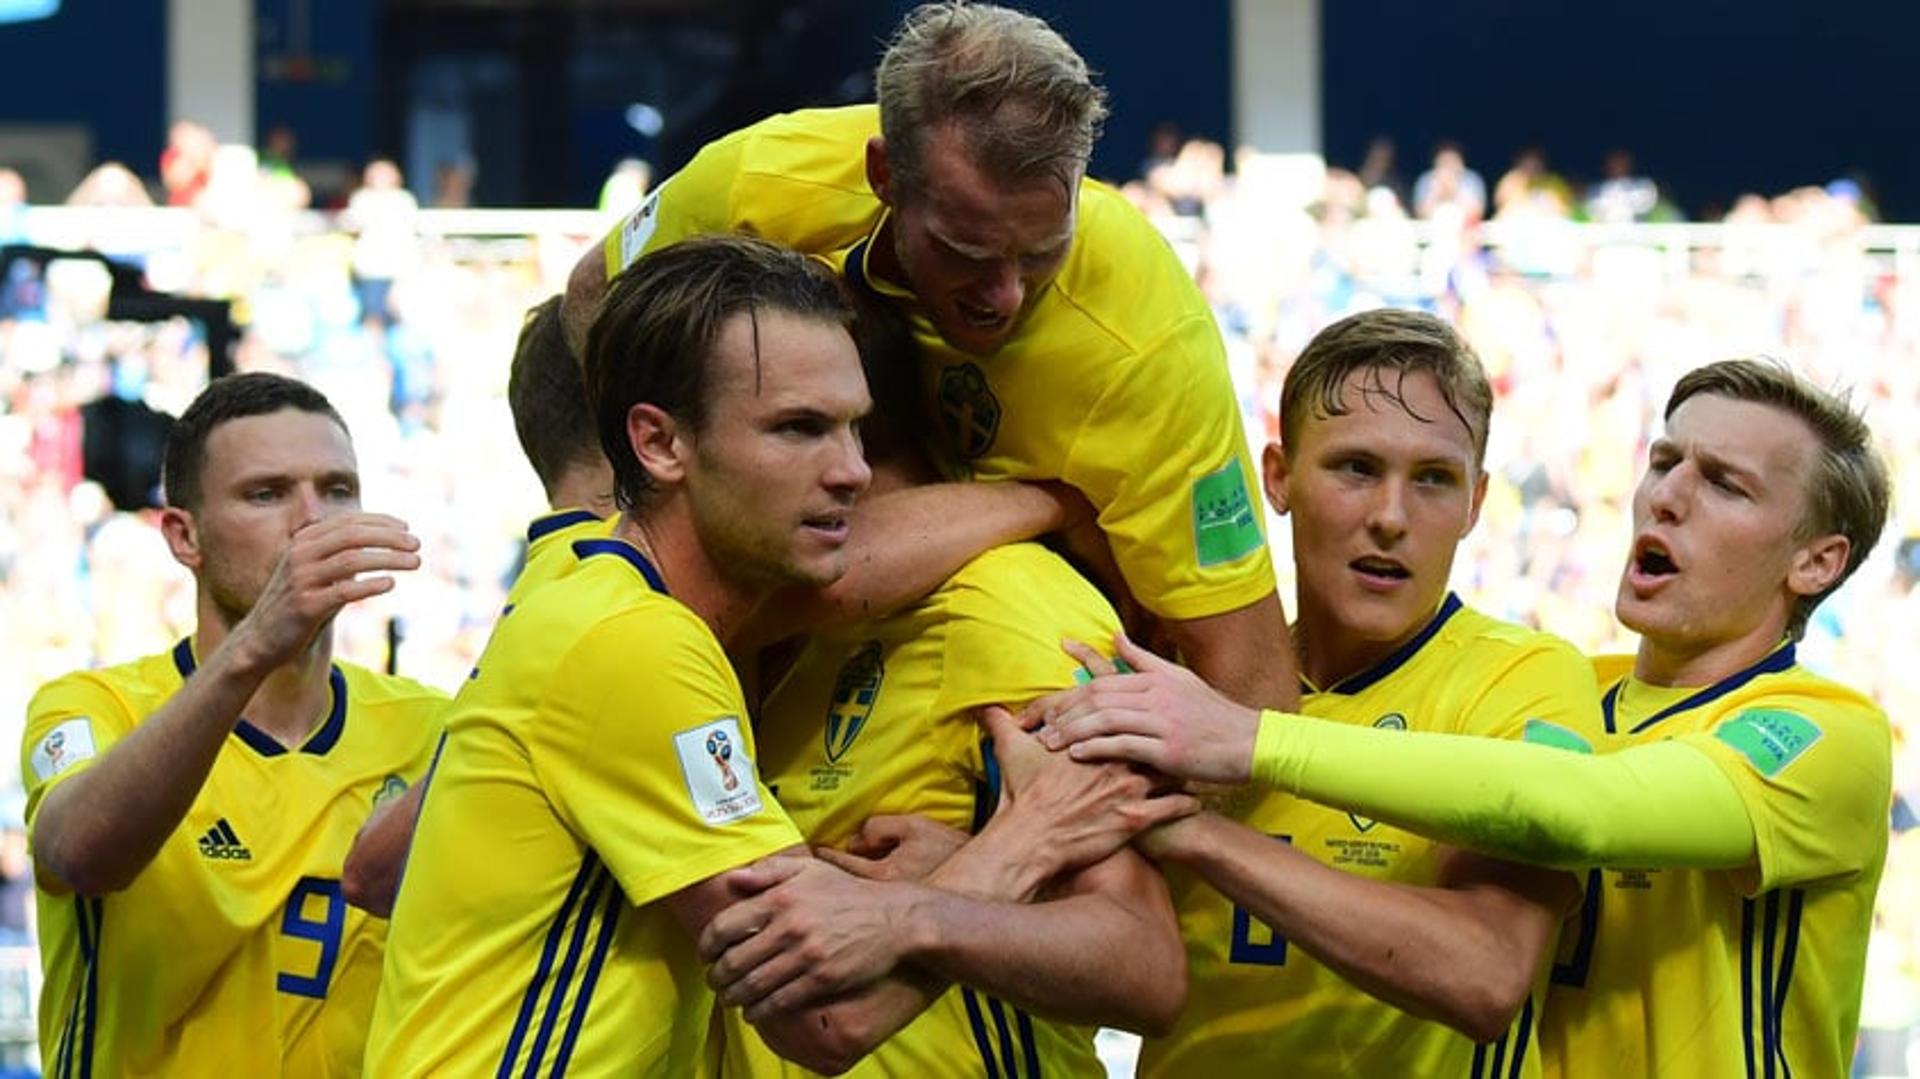 Suécia 1 x 0 Coreia do Sul: veja imagens da partida